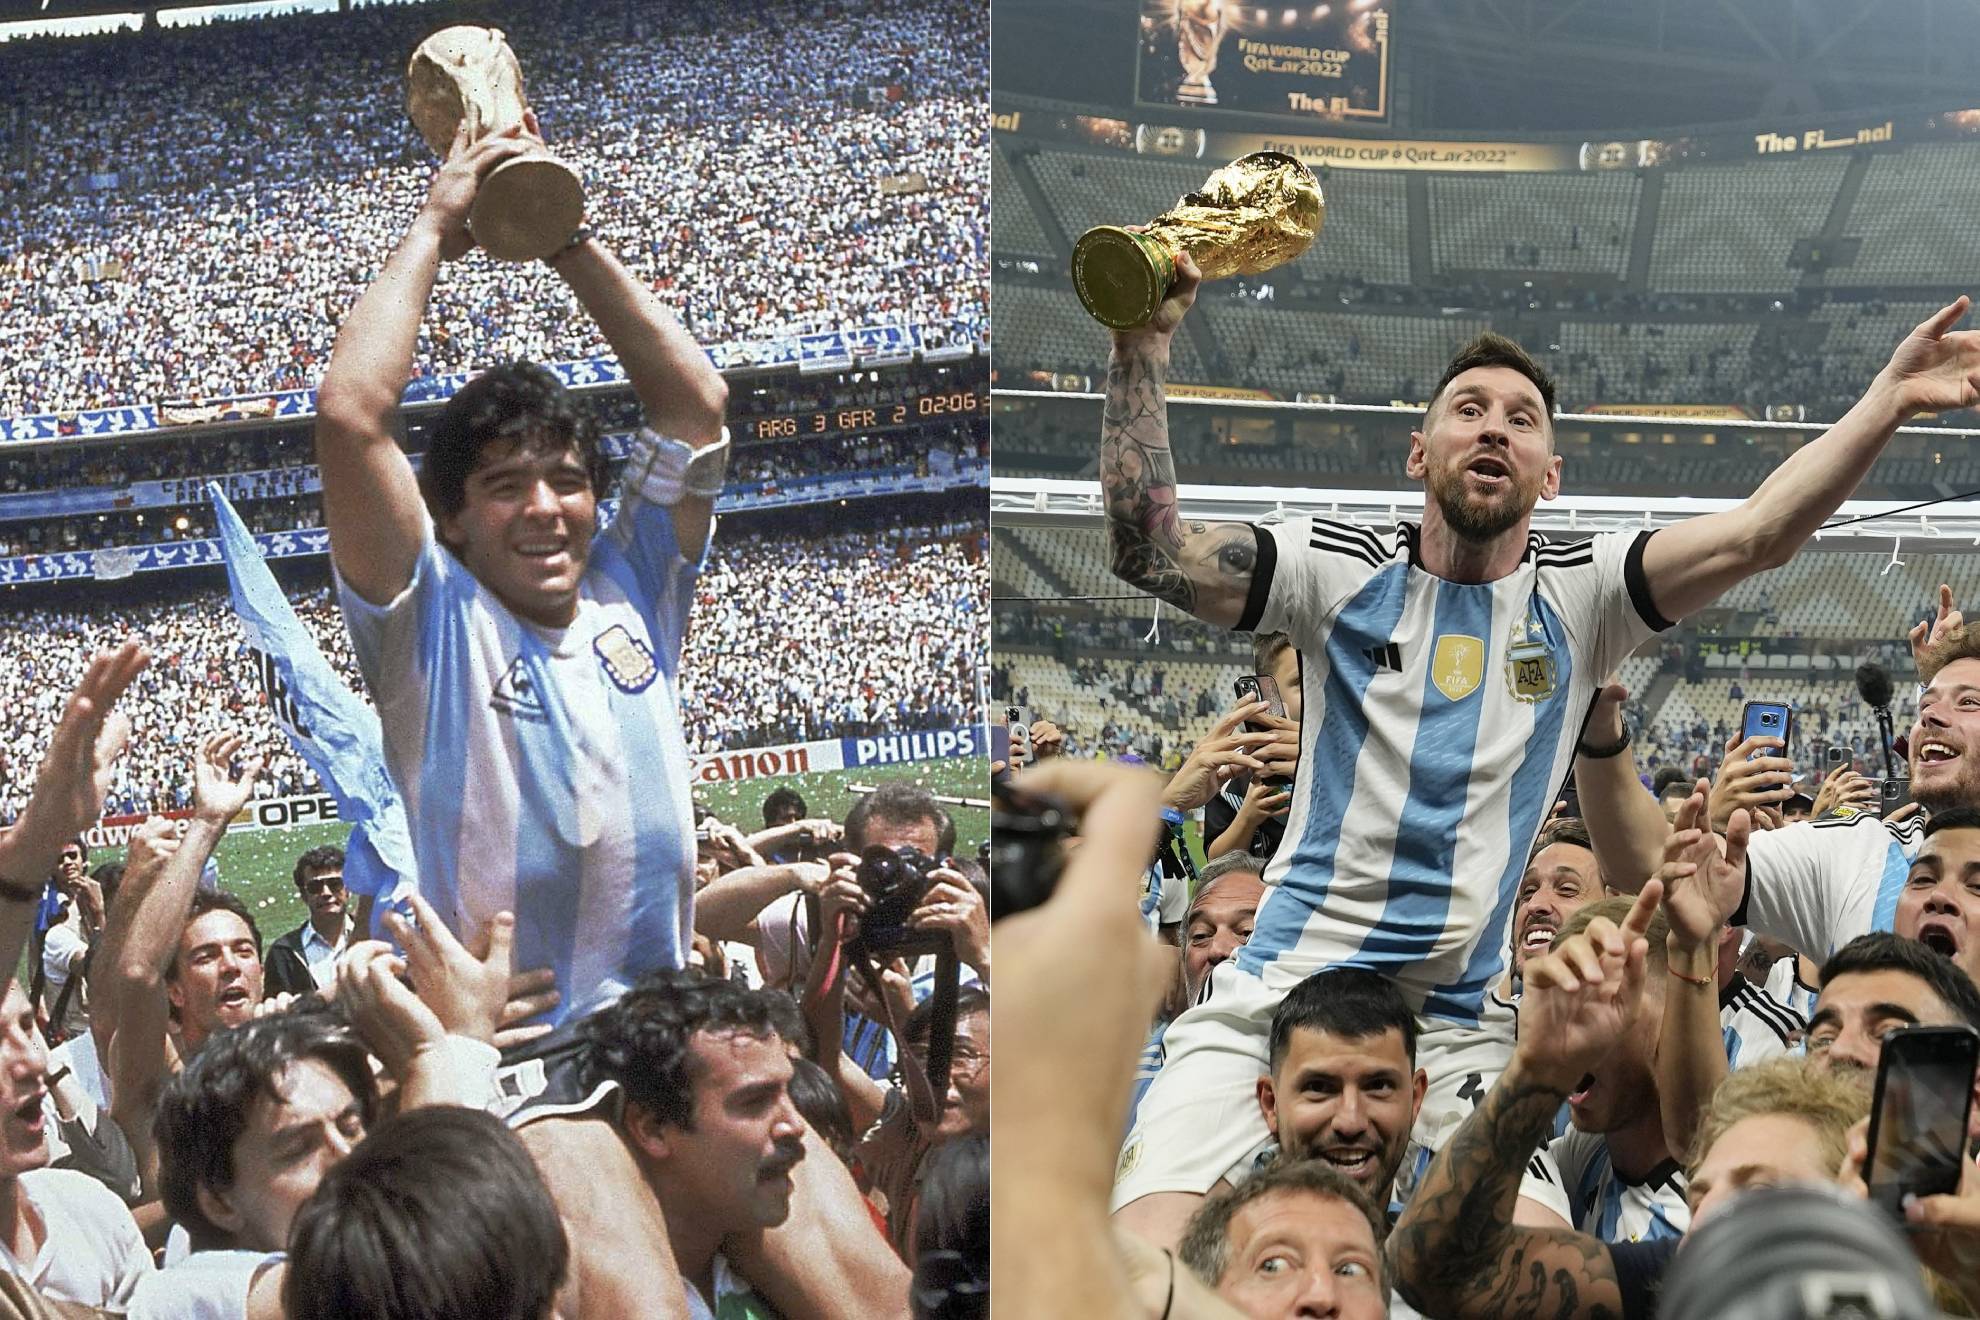 Hãy xem ảnh Messi cầm Cup World Cup, thần tượng của hàng triệu người hâm mộ bóng đá và cầu thủ xuất sắc nhất thế giới. Cùng chiêm ngưỡng khoảnh khắc đầy cảm xúc này và tôn vinh sự thành công của anh ấy trong sự nghiệp.